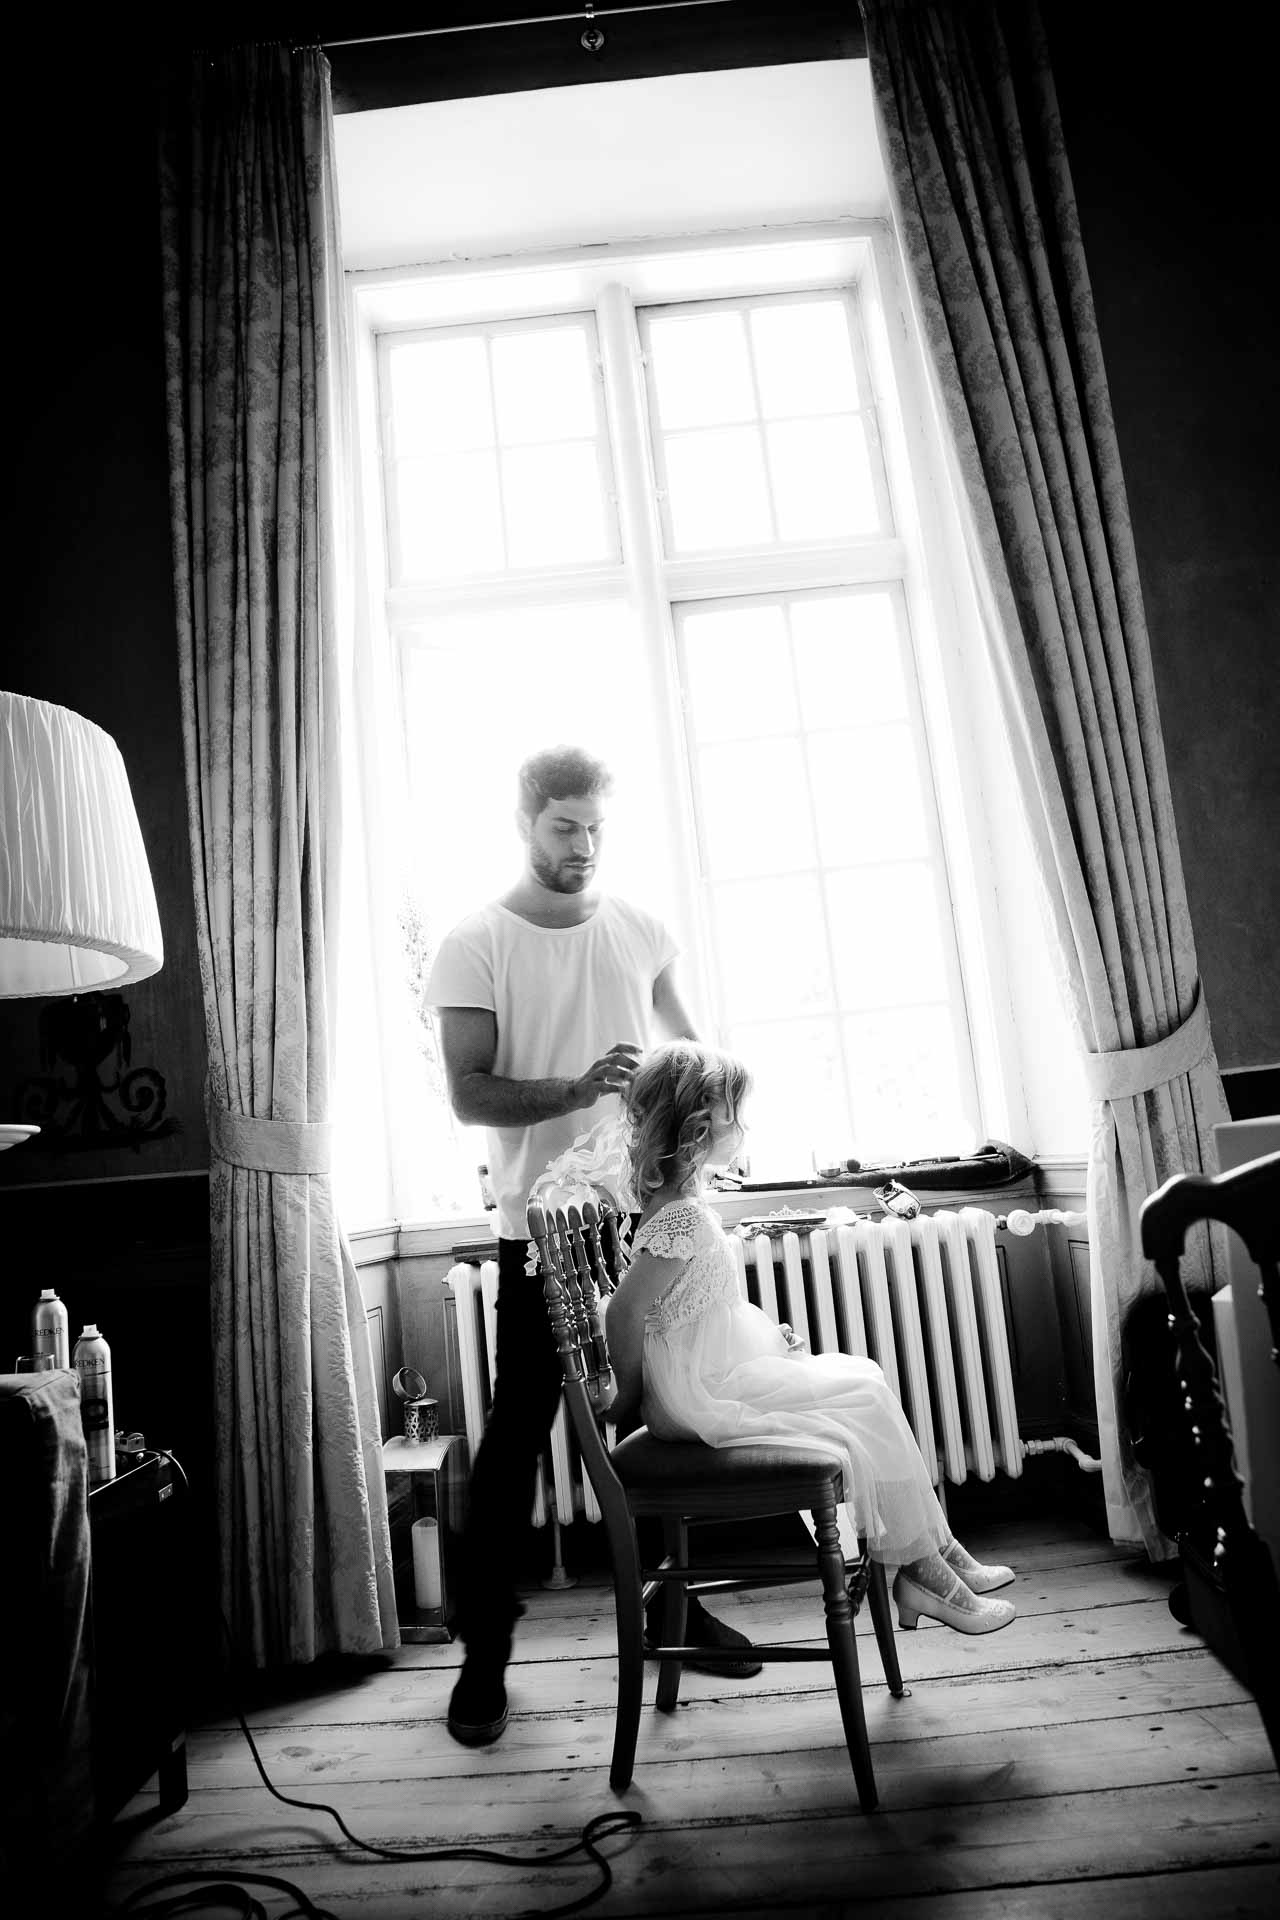 Eventyrlige bryllupsfotos fra Odense: Magiske og drømmende billeder, der fanger brudeparrets eventyrlyst og eventyr i Odenses eventyrlige og historiske omgivelser.